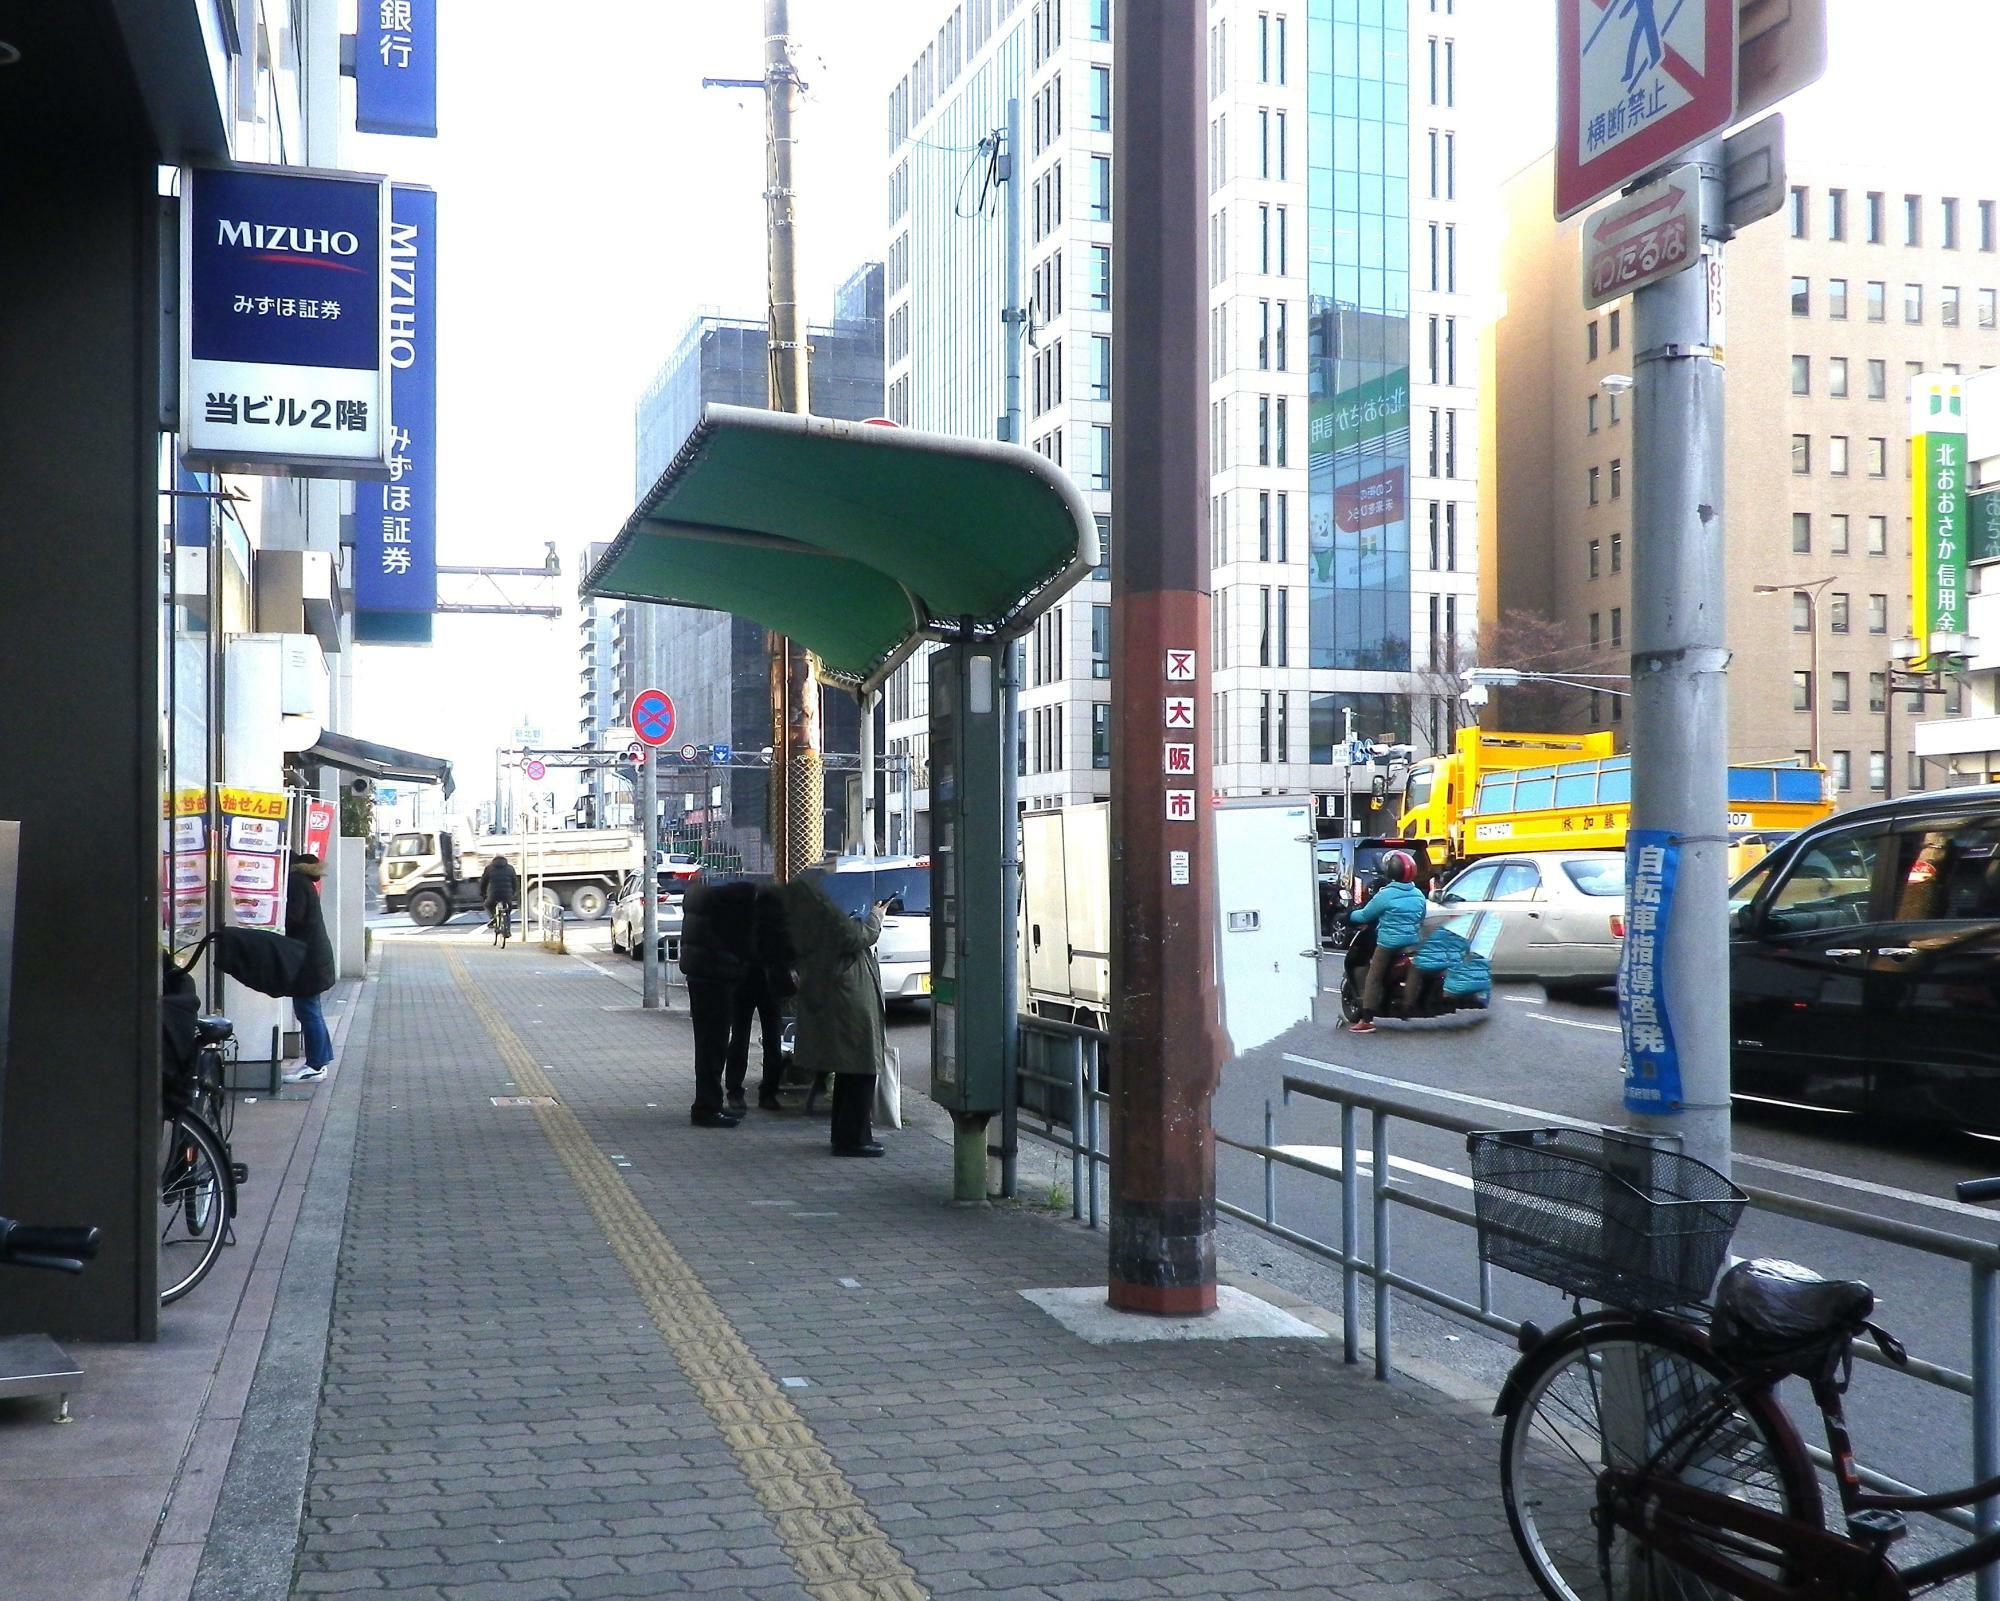 復路側の停留所の様子。阪急電車十三駅西口近くのみずほ銀行の前にあります。